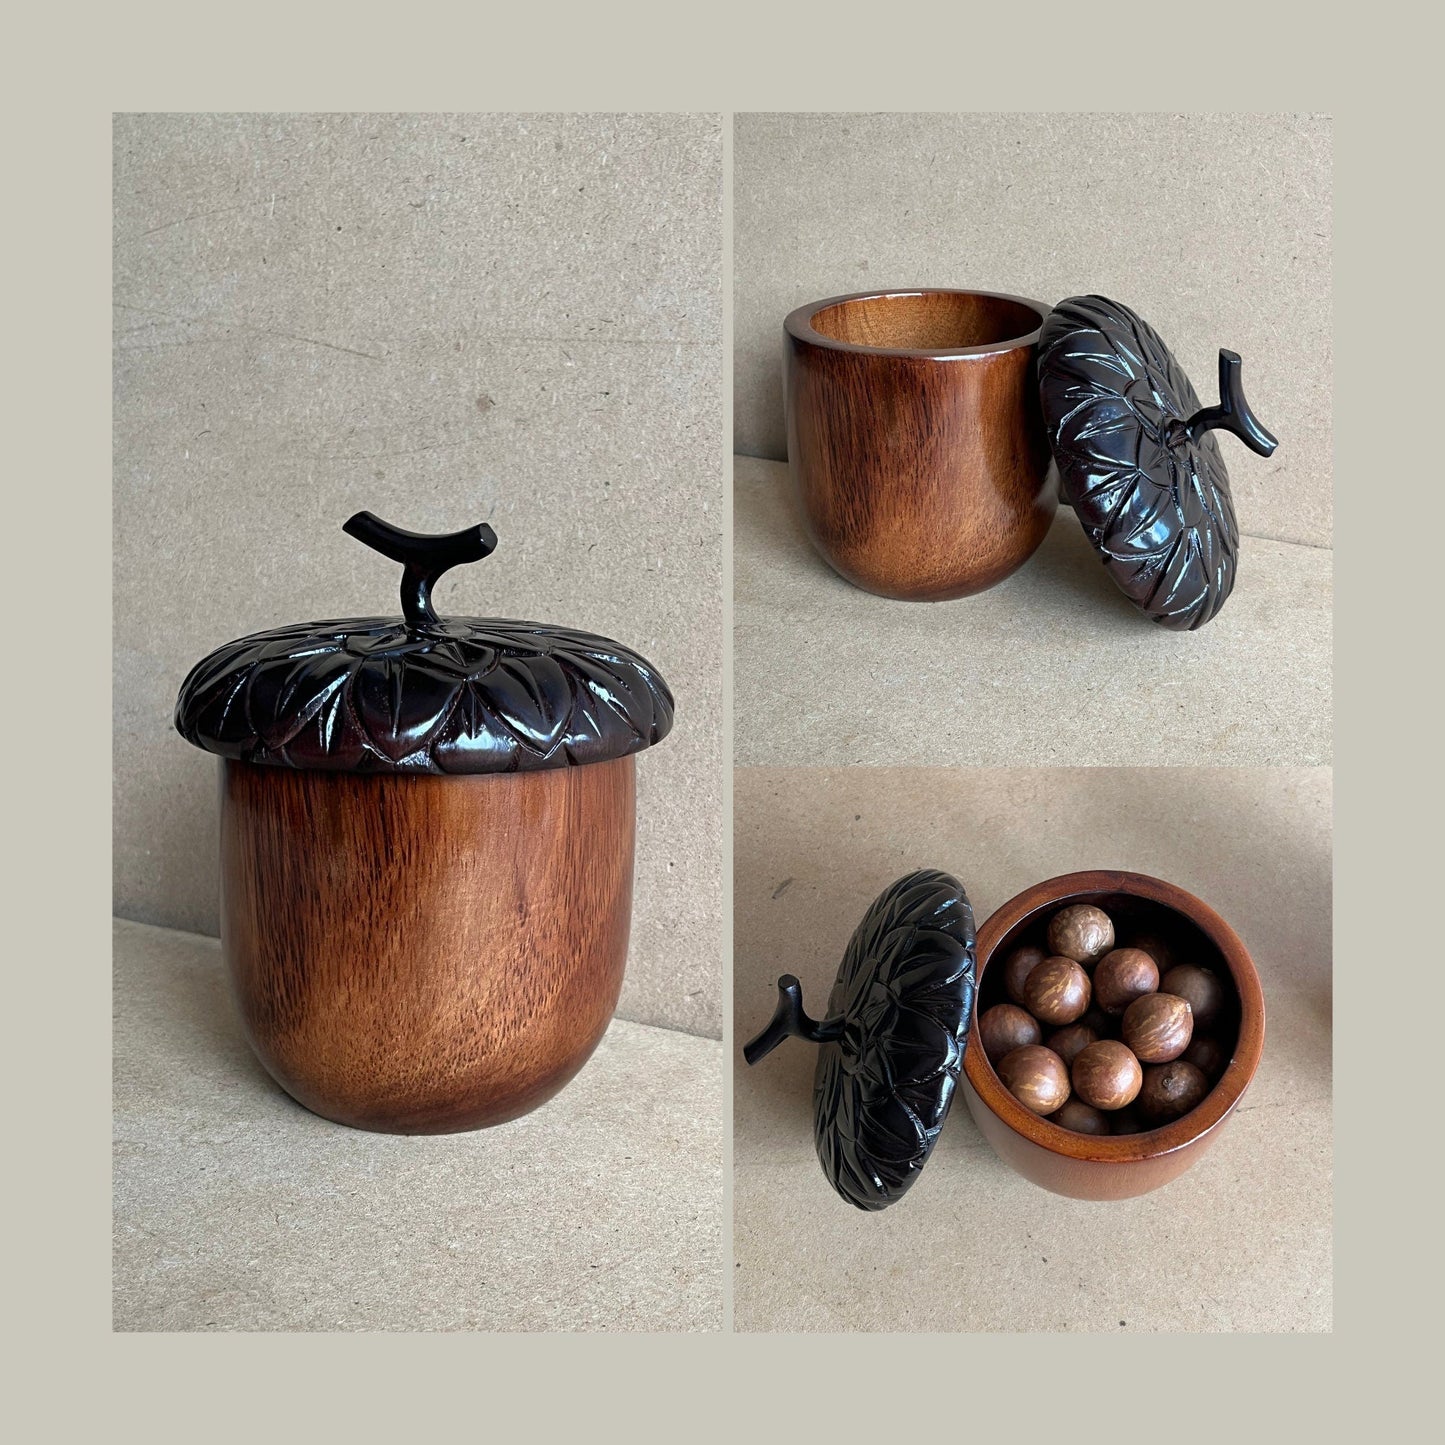 Handmade Wooden Acorn Box, Decorative JarPremiumWoodArt